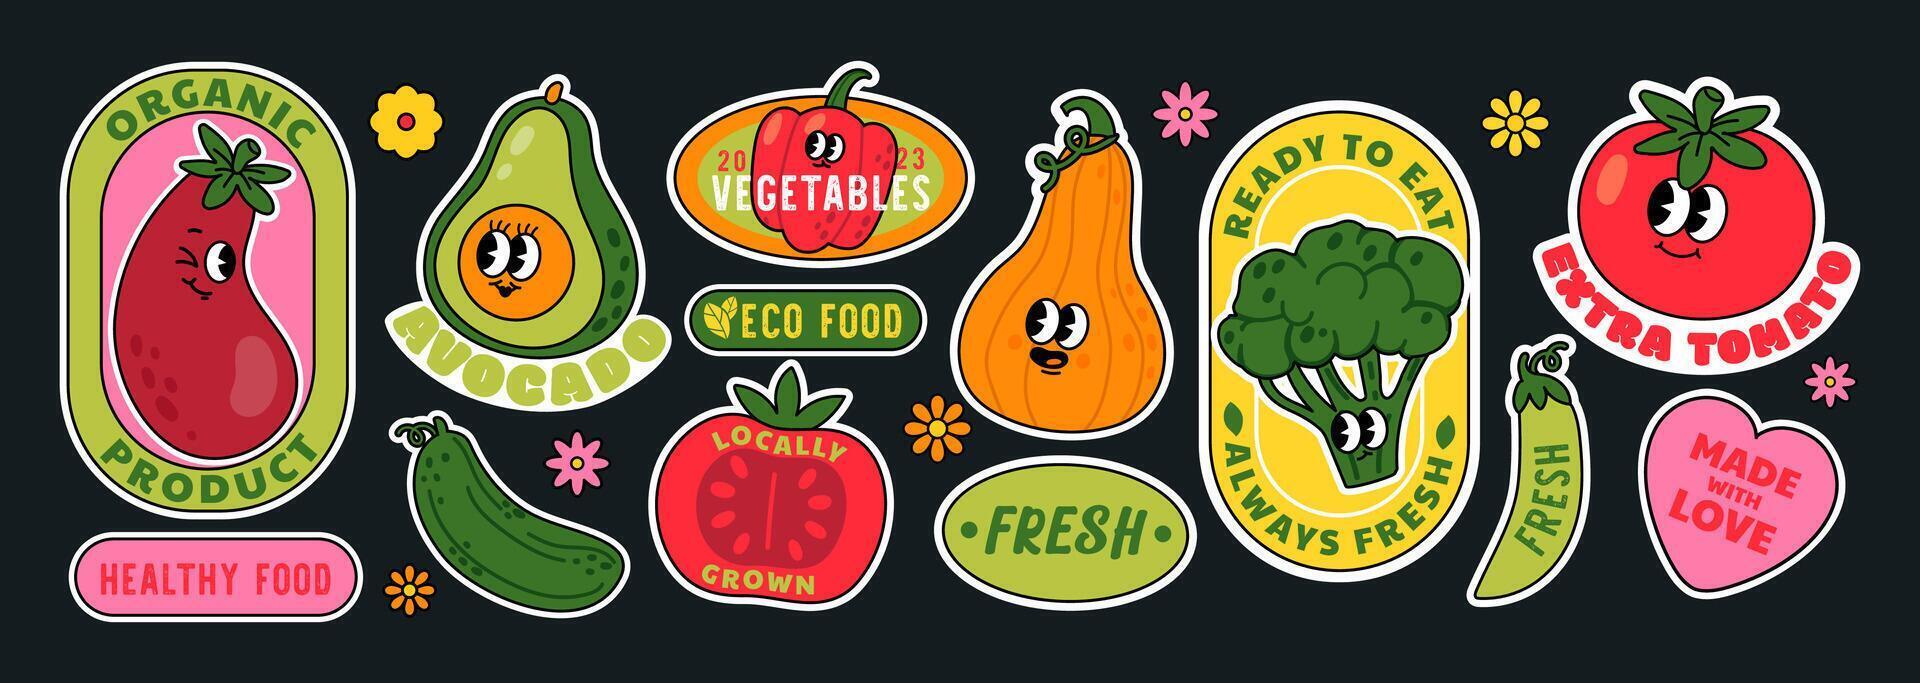 mignonne légume autocollant. dessin animé rétro des légumes personnages Étiquettes. branché supermarché nourriture badge, promo marché emblèmes avec tomate, aubergine, biologique produit. ensemble vecteur